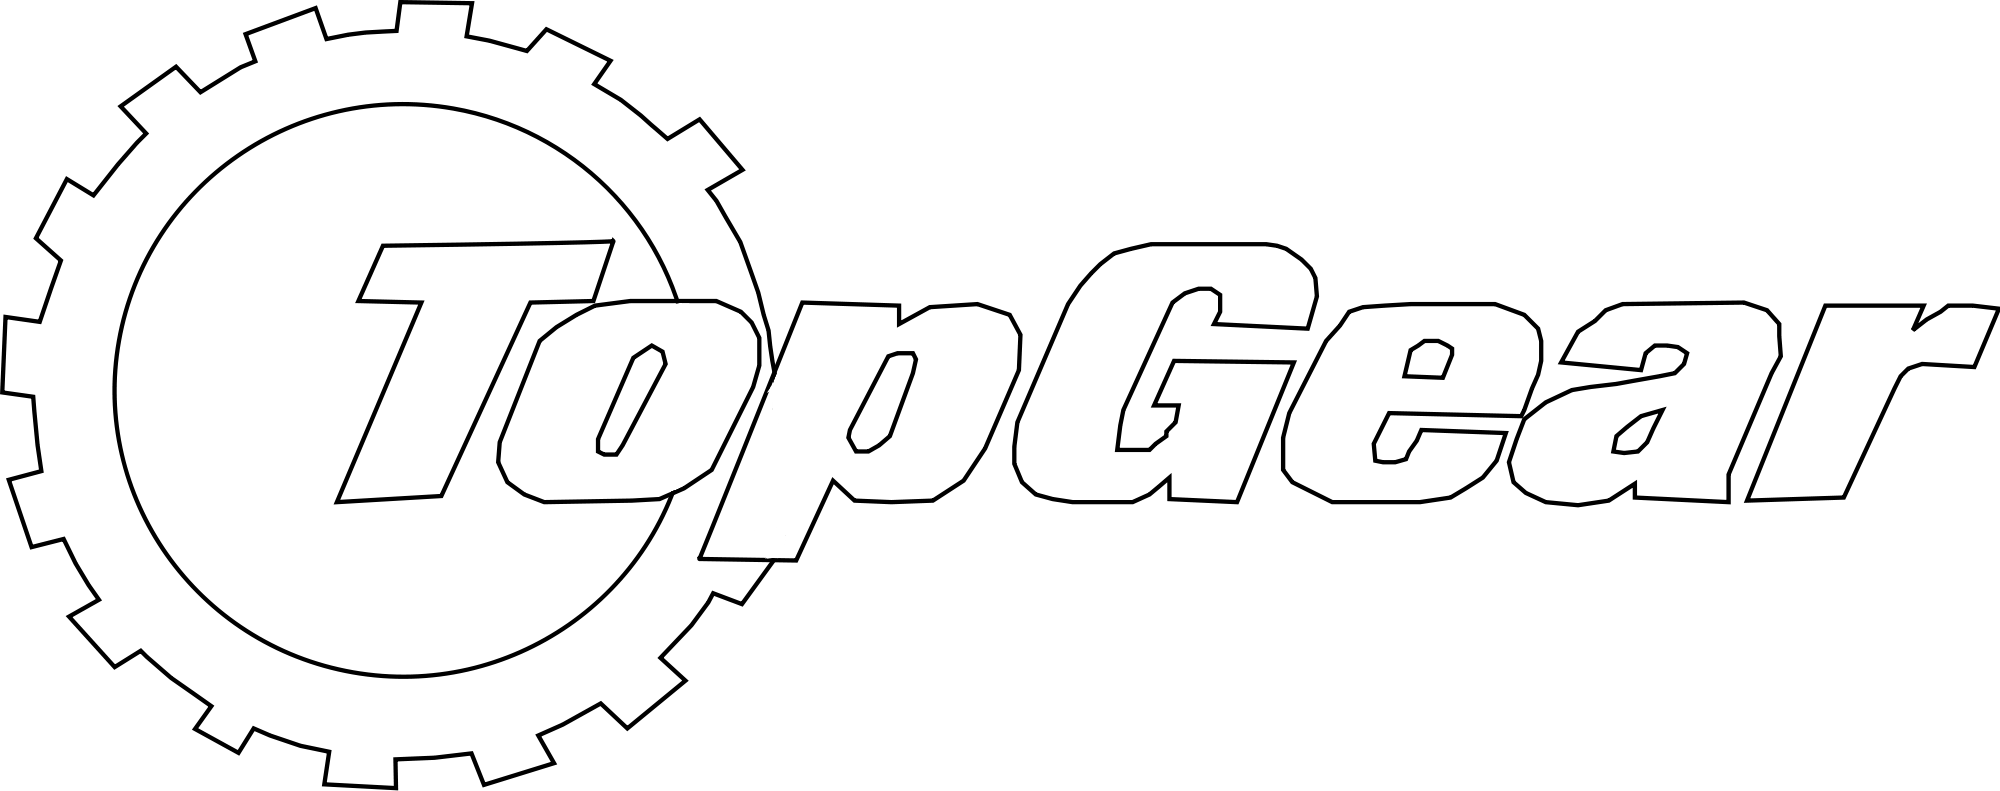 Top Gear Logo - Top gear fullsize.svg